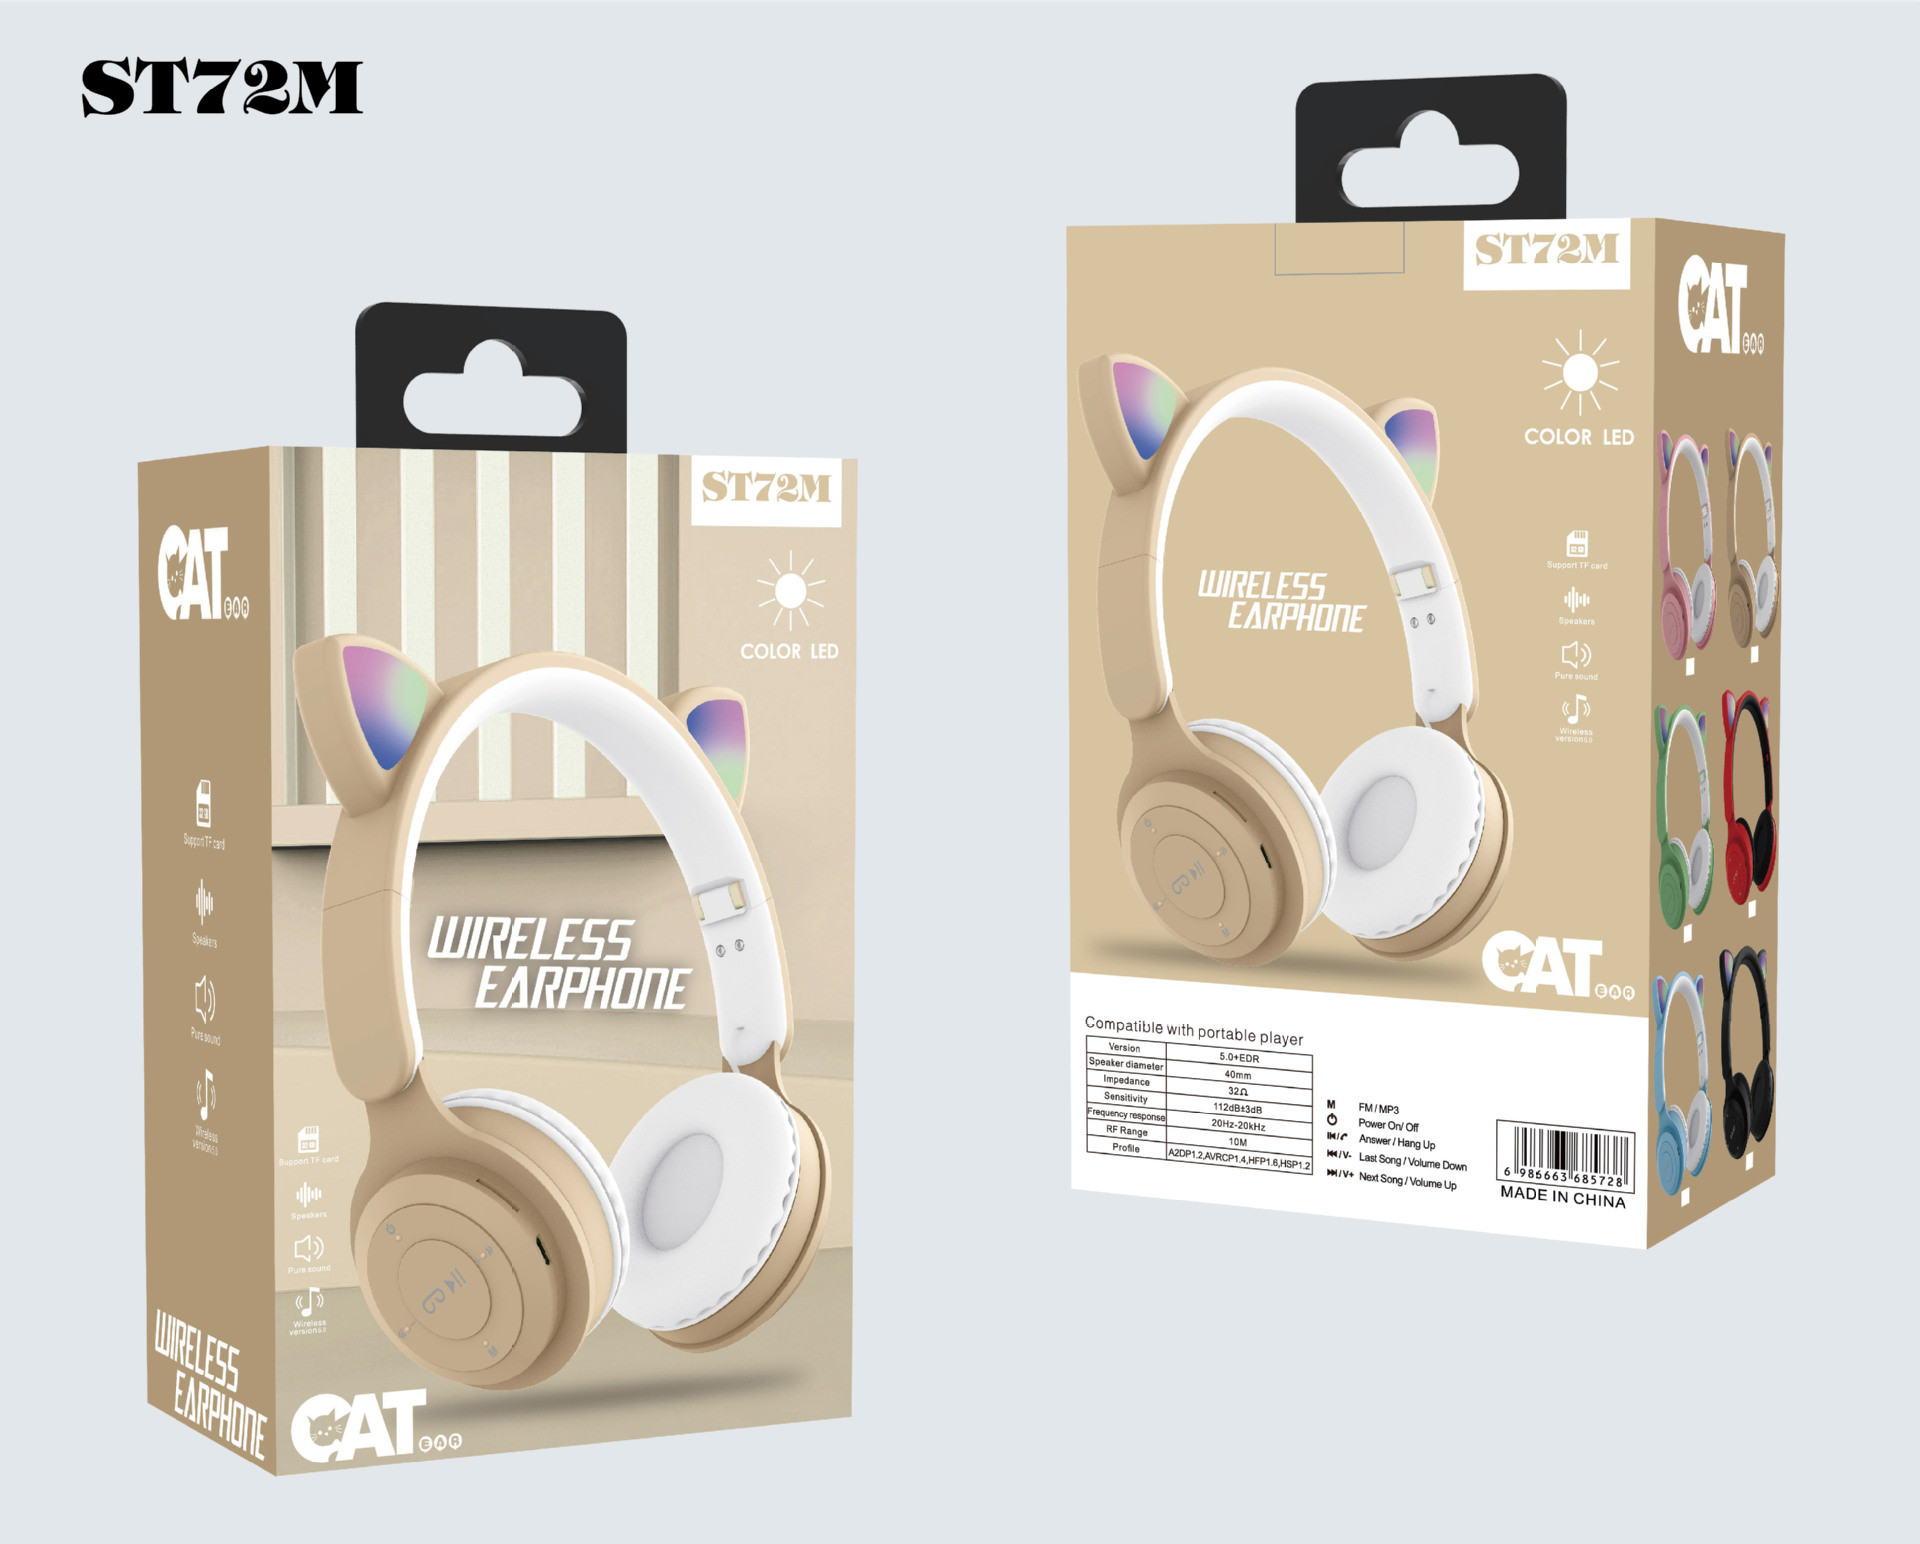 跨境新款头戴式无线蓝牙耳机ST72M 时尚猫耳可折叠插卡FM蓝牙耳机详情12